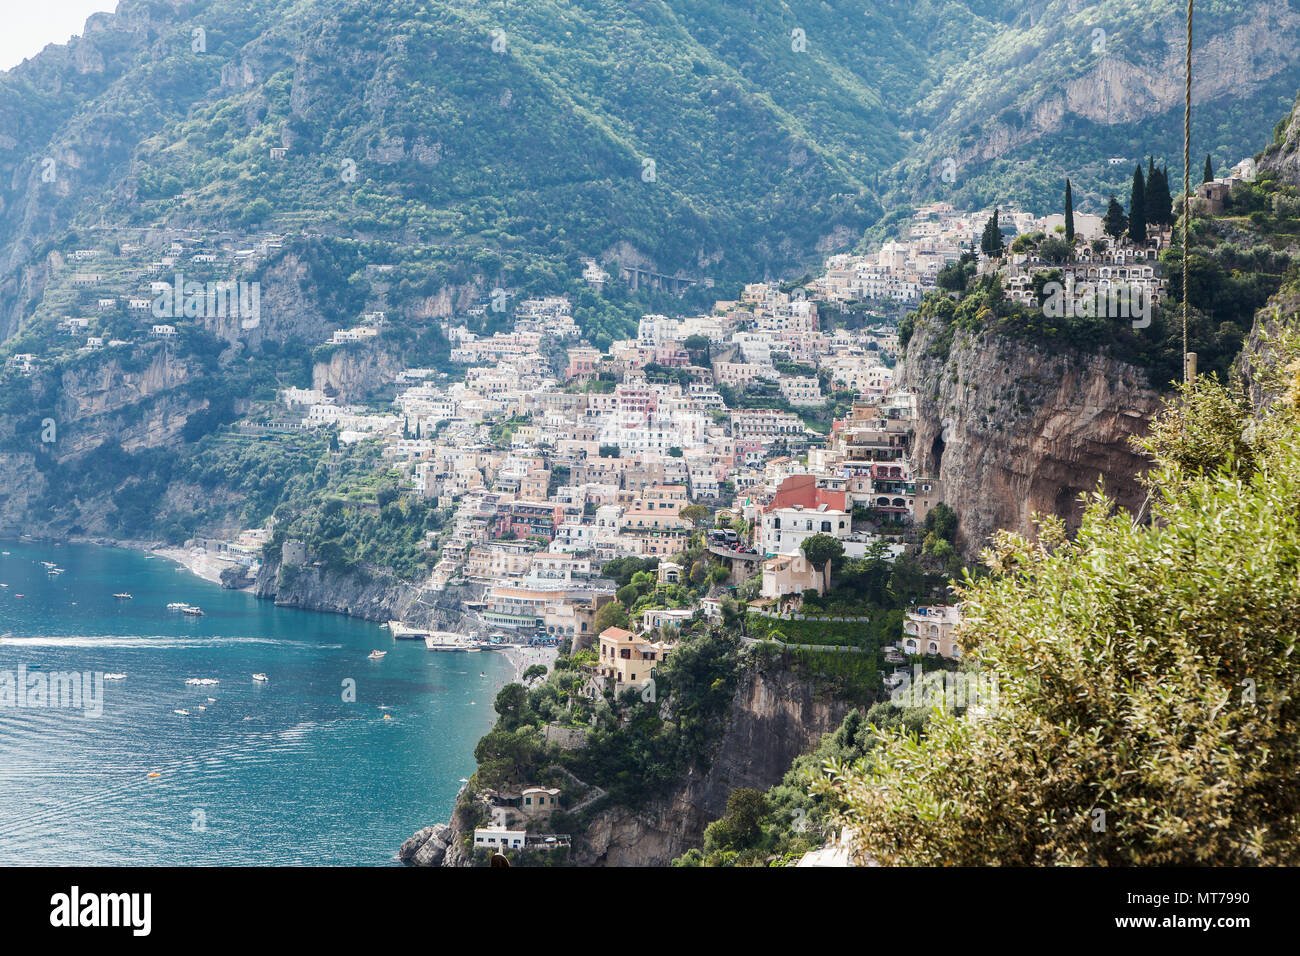 Der Weg der Götter von Agerola nach Positano Amalfiküste Italien, Wandern auf dem Weg der Götter Amalficoast Italien, Blick auf Positano, Aussicht auf Positano Stockfoto